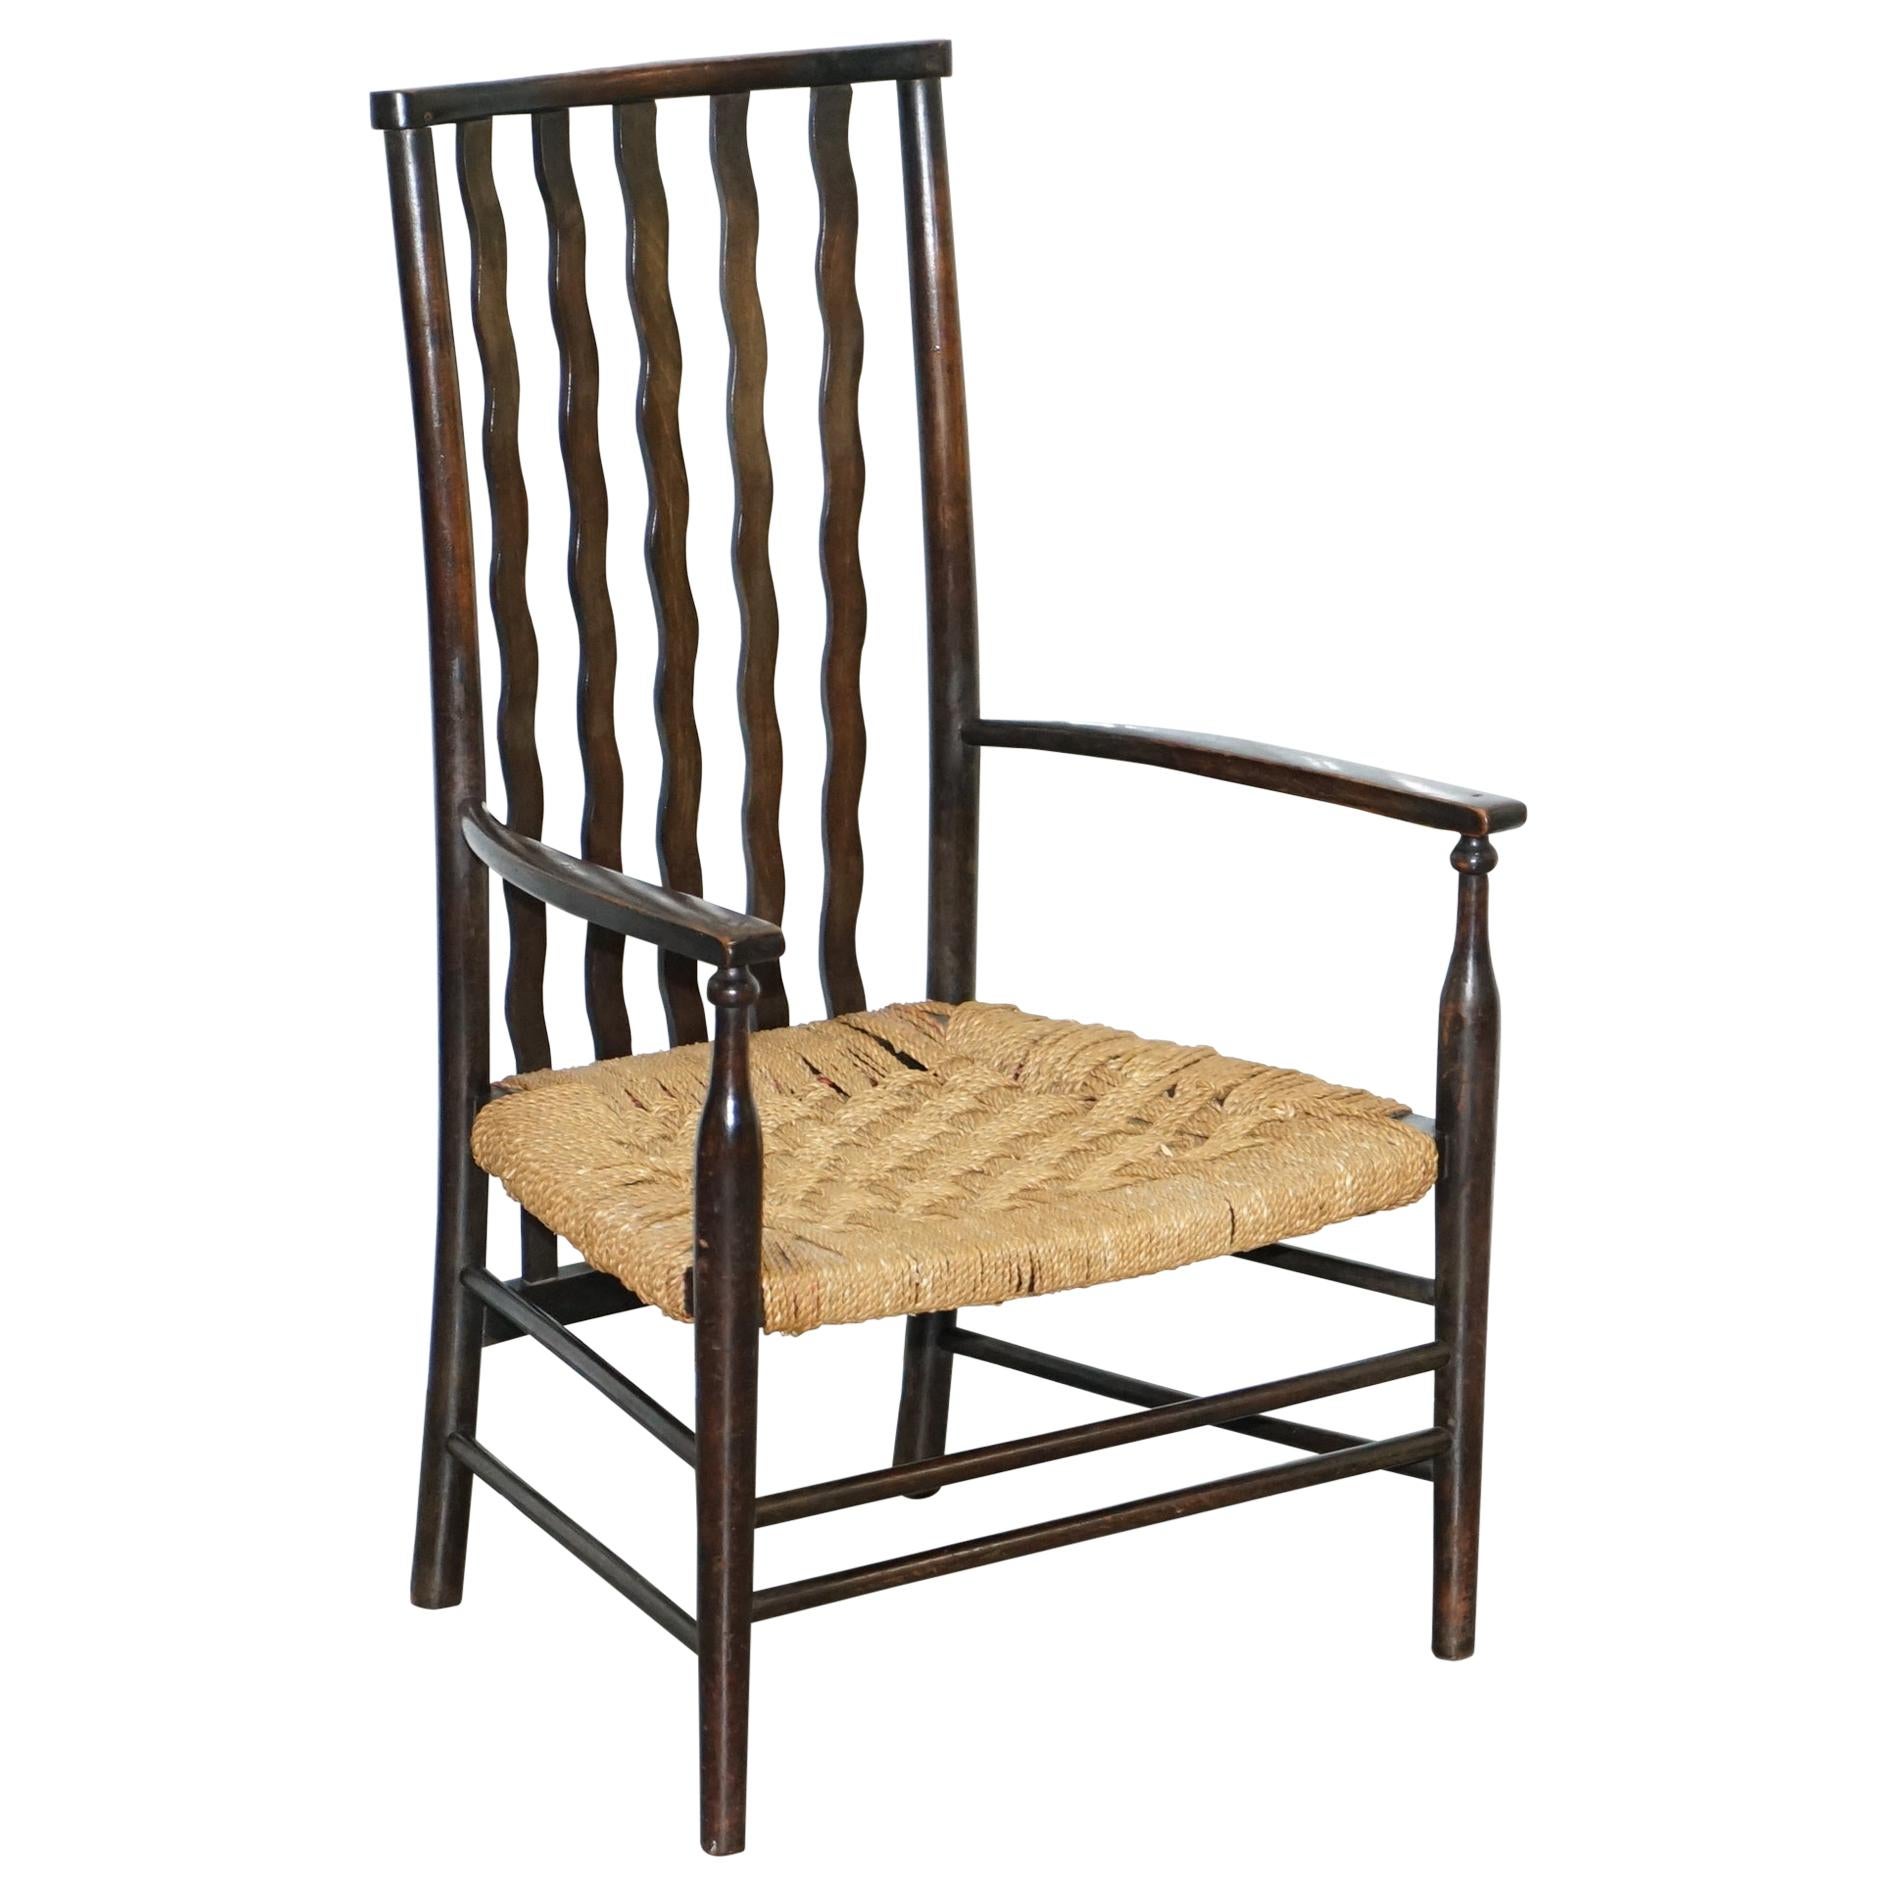 1 des 2 petits fauteuils Morris & Co Liberty London Lathback tissés du 19ème siècle